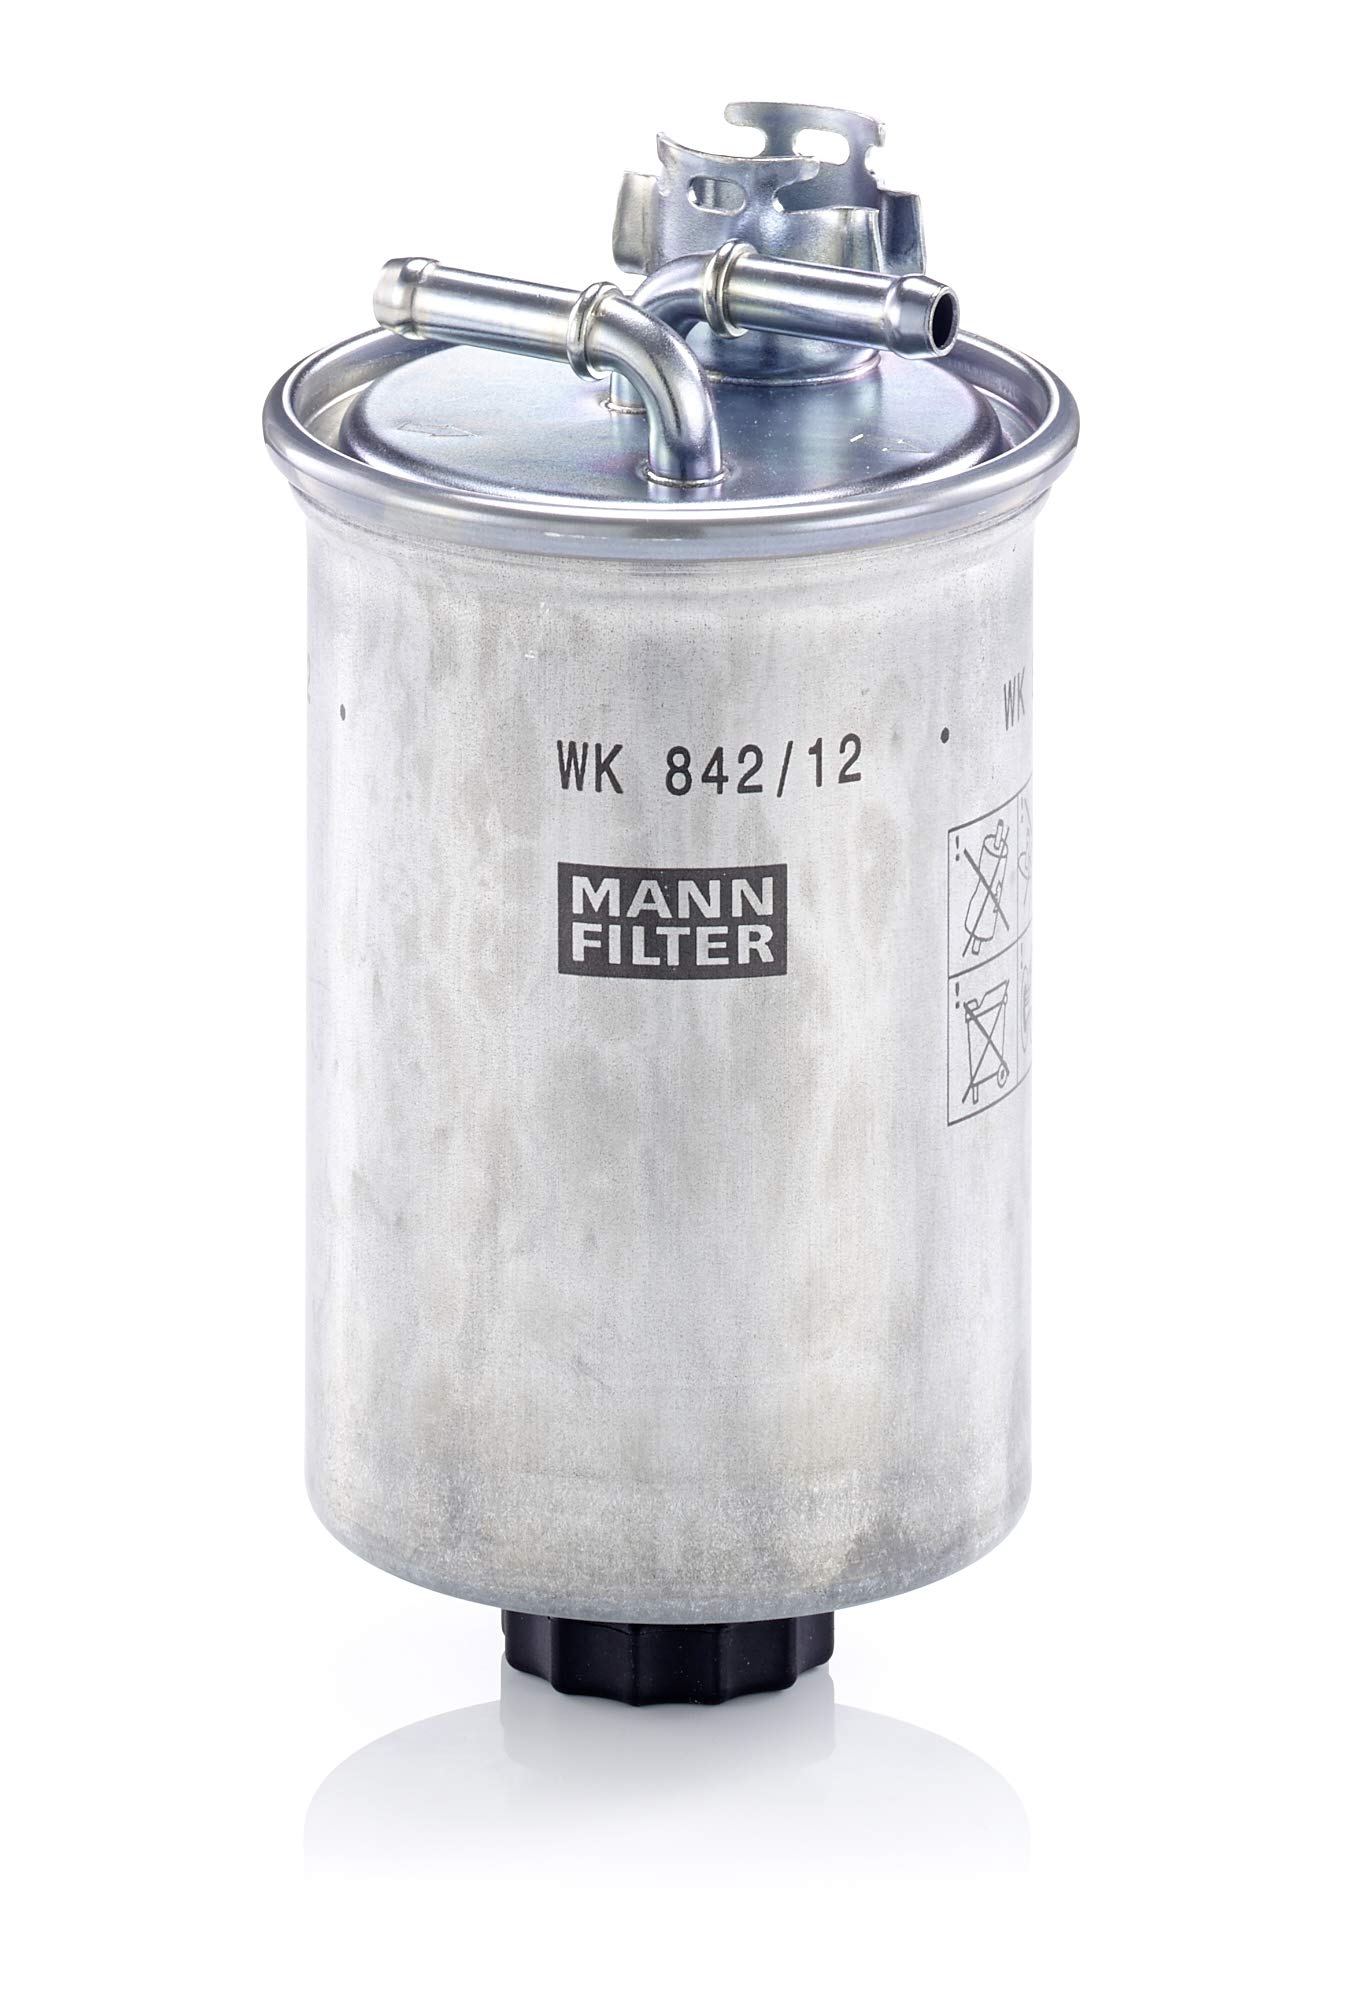 MANN-FILTER WK 842/12 X Kraftstofffilter – Kraftstofffilter Satz mit Dichtung / Dichtungssatz – Für PKW von MANN-FILTER